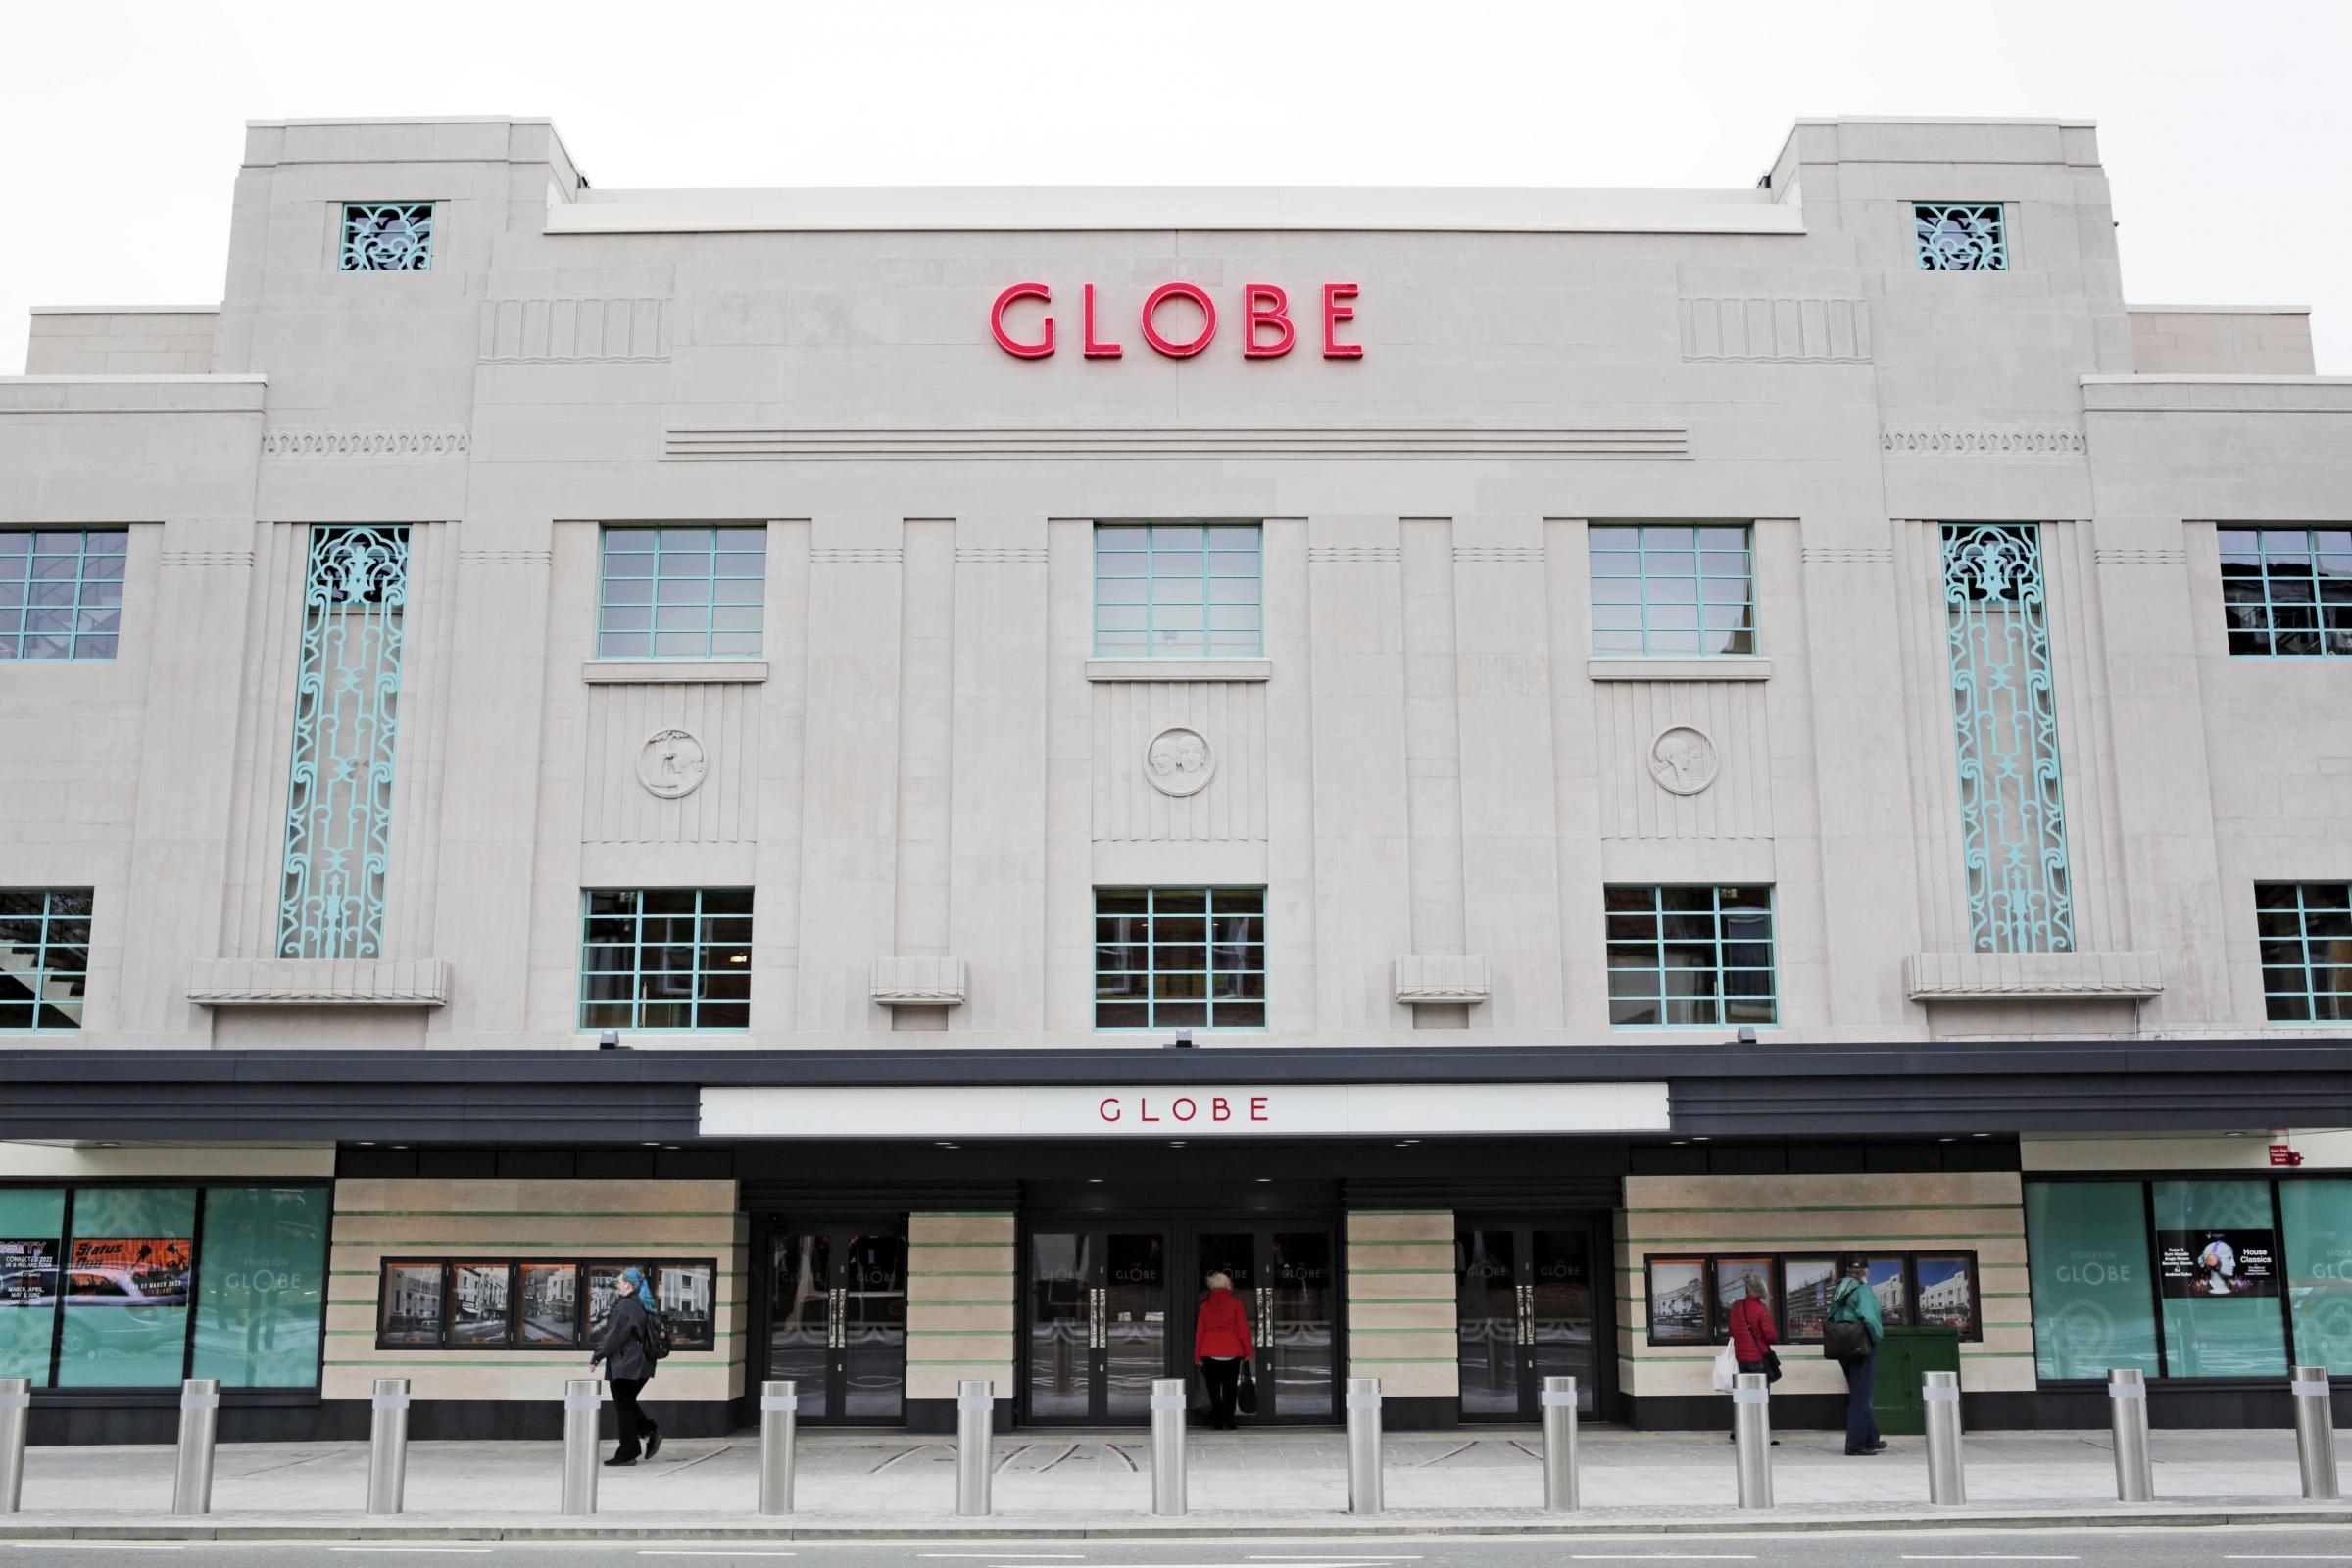 The refurbished Globe Theatre in Stockton